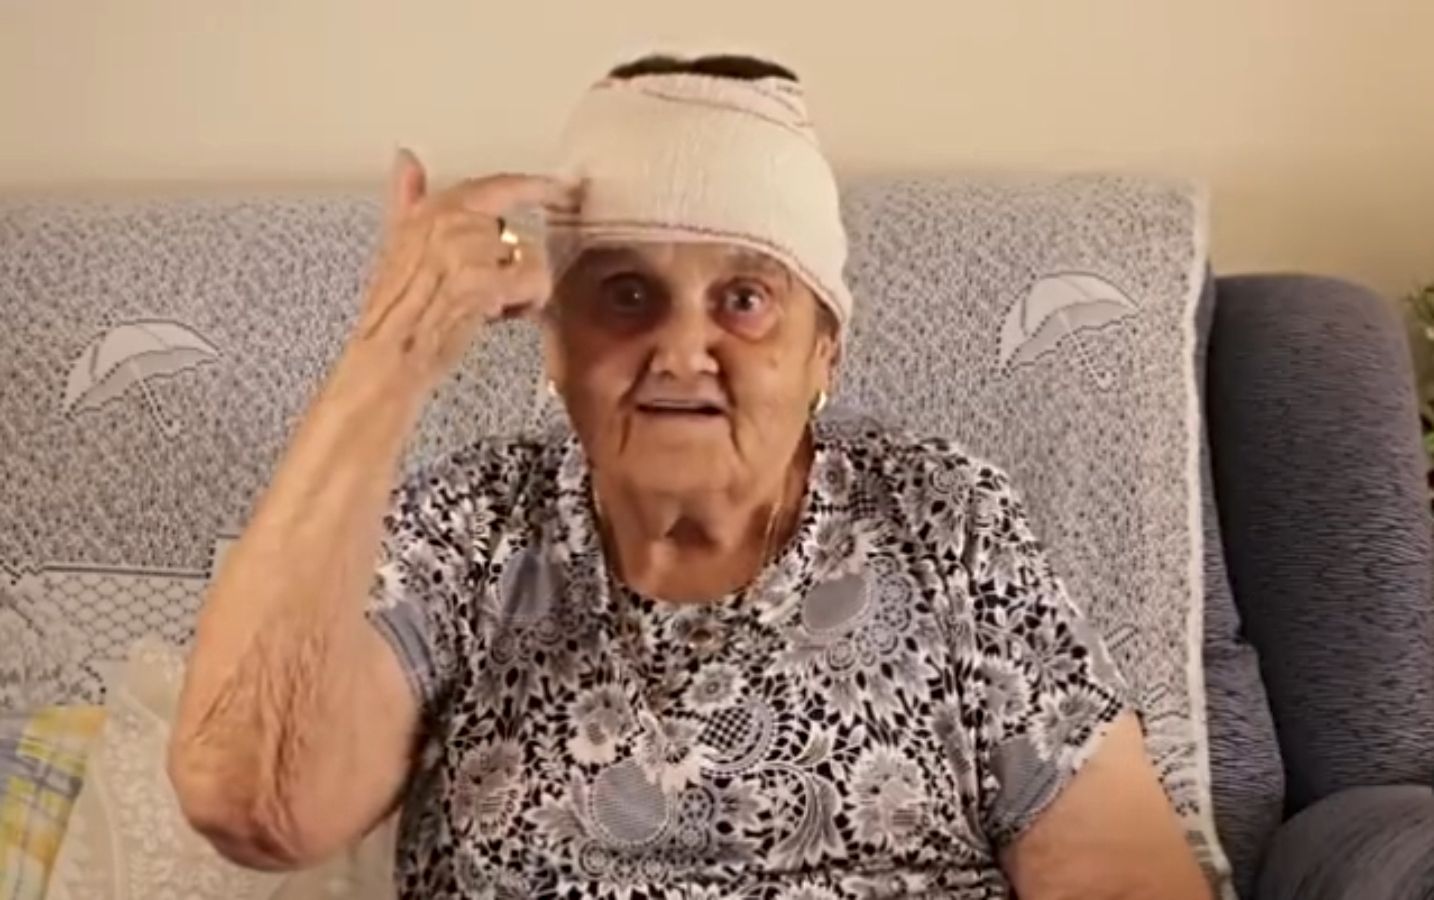 Rosario, la abuela influencer extremeña, toca la salud mental: "¿Y si arreglamos nuestra azotea?"